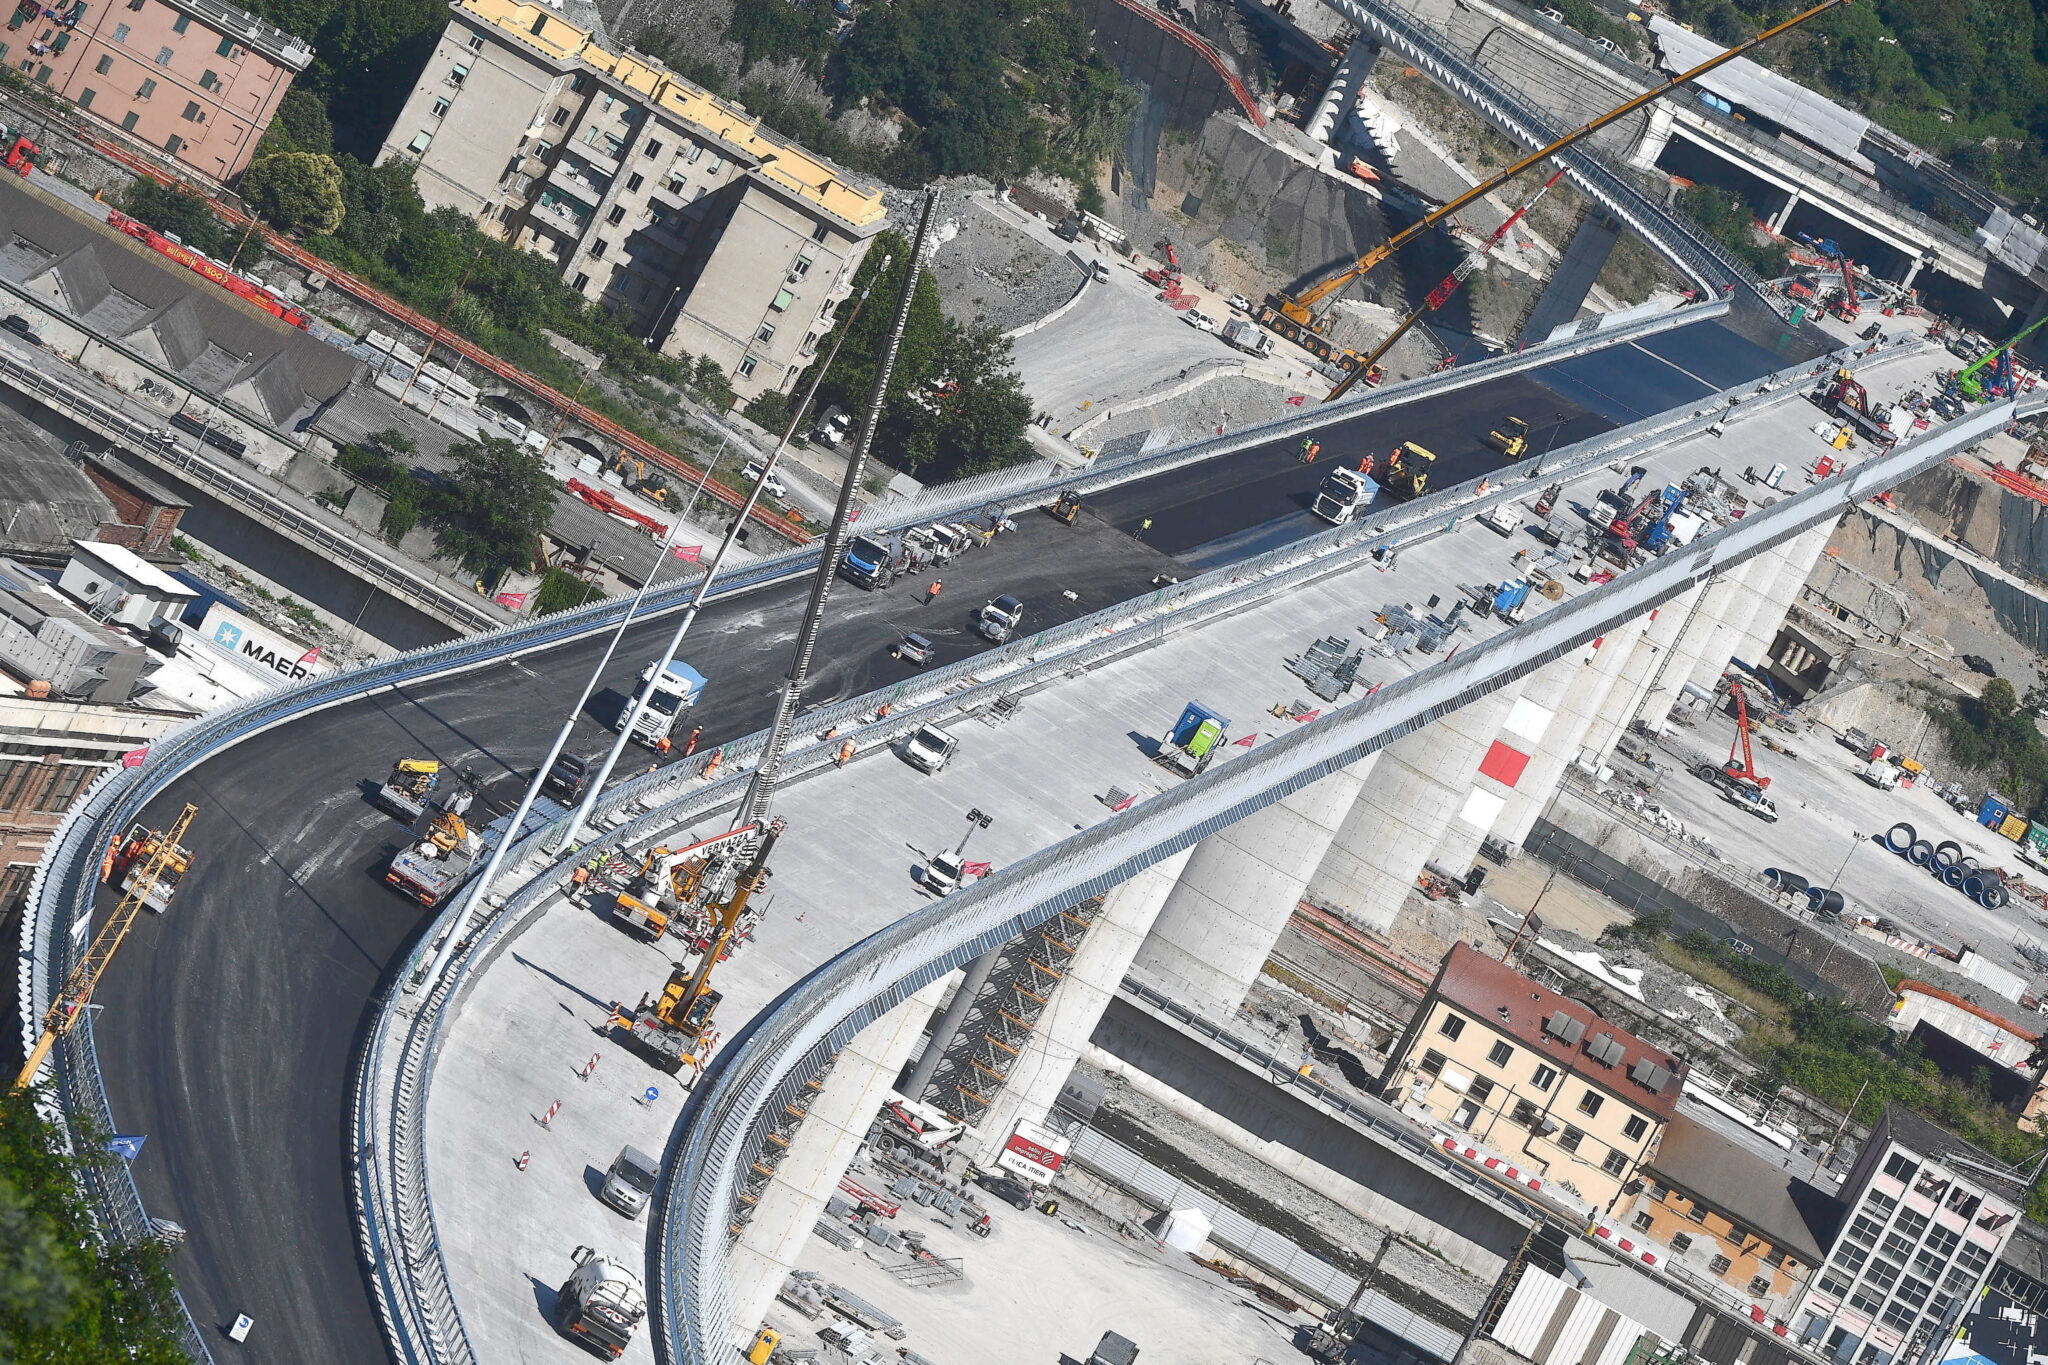 Włochy, Genua: budowa nowego mostu po ty jak w sierpniu 2018 roku most się zawalił. Zginęły wtedy 43 osoby, fot. EPA / LUCA ZENNARO 